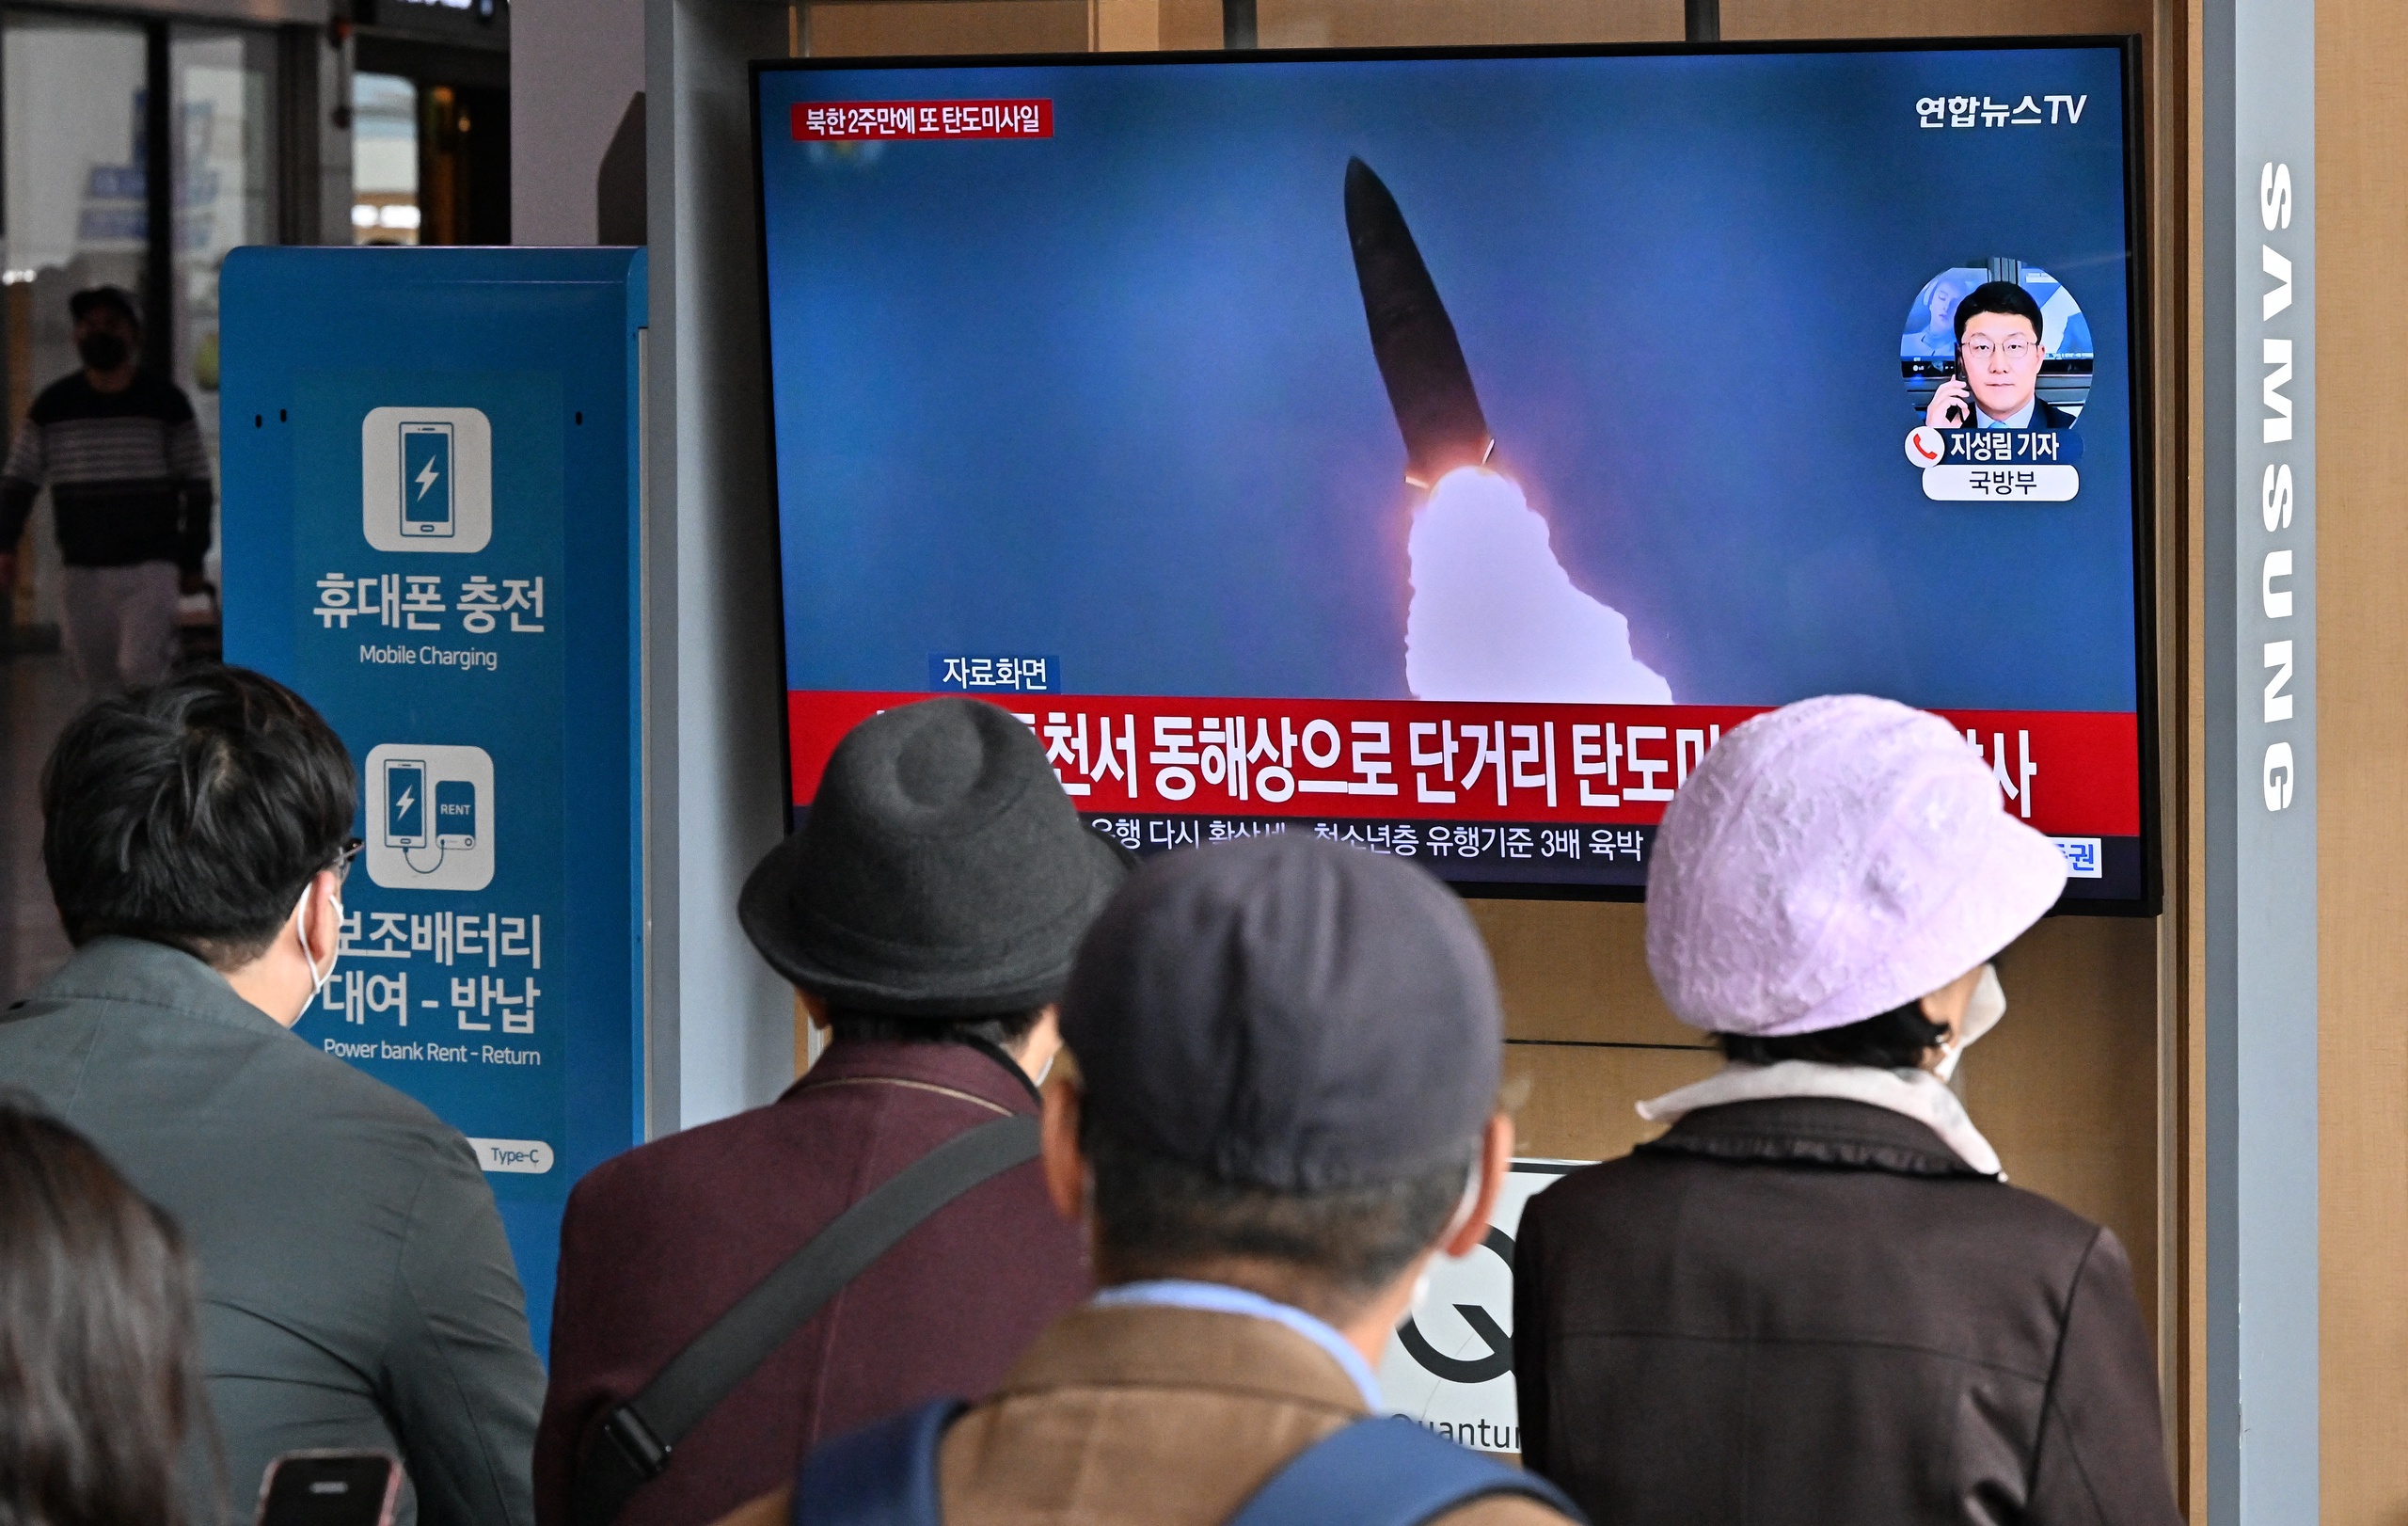 Noord-Korea heeft vrijdag opnieuw twee ballistische raketten afgevuurd, meldt het Zuid-Koreaanse leger. De raketten zouden vanaf de oostkust richting de Japanse Zee zijn gevlogen. 